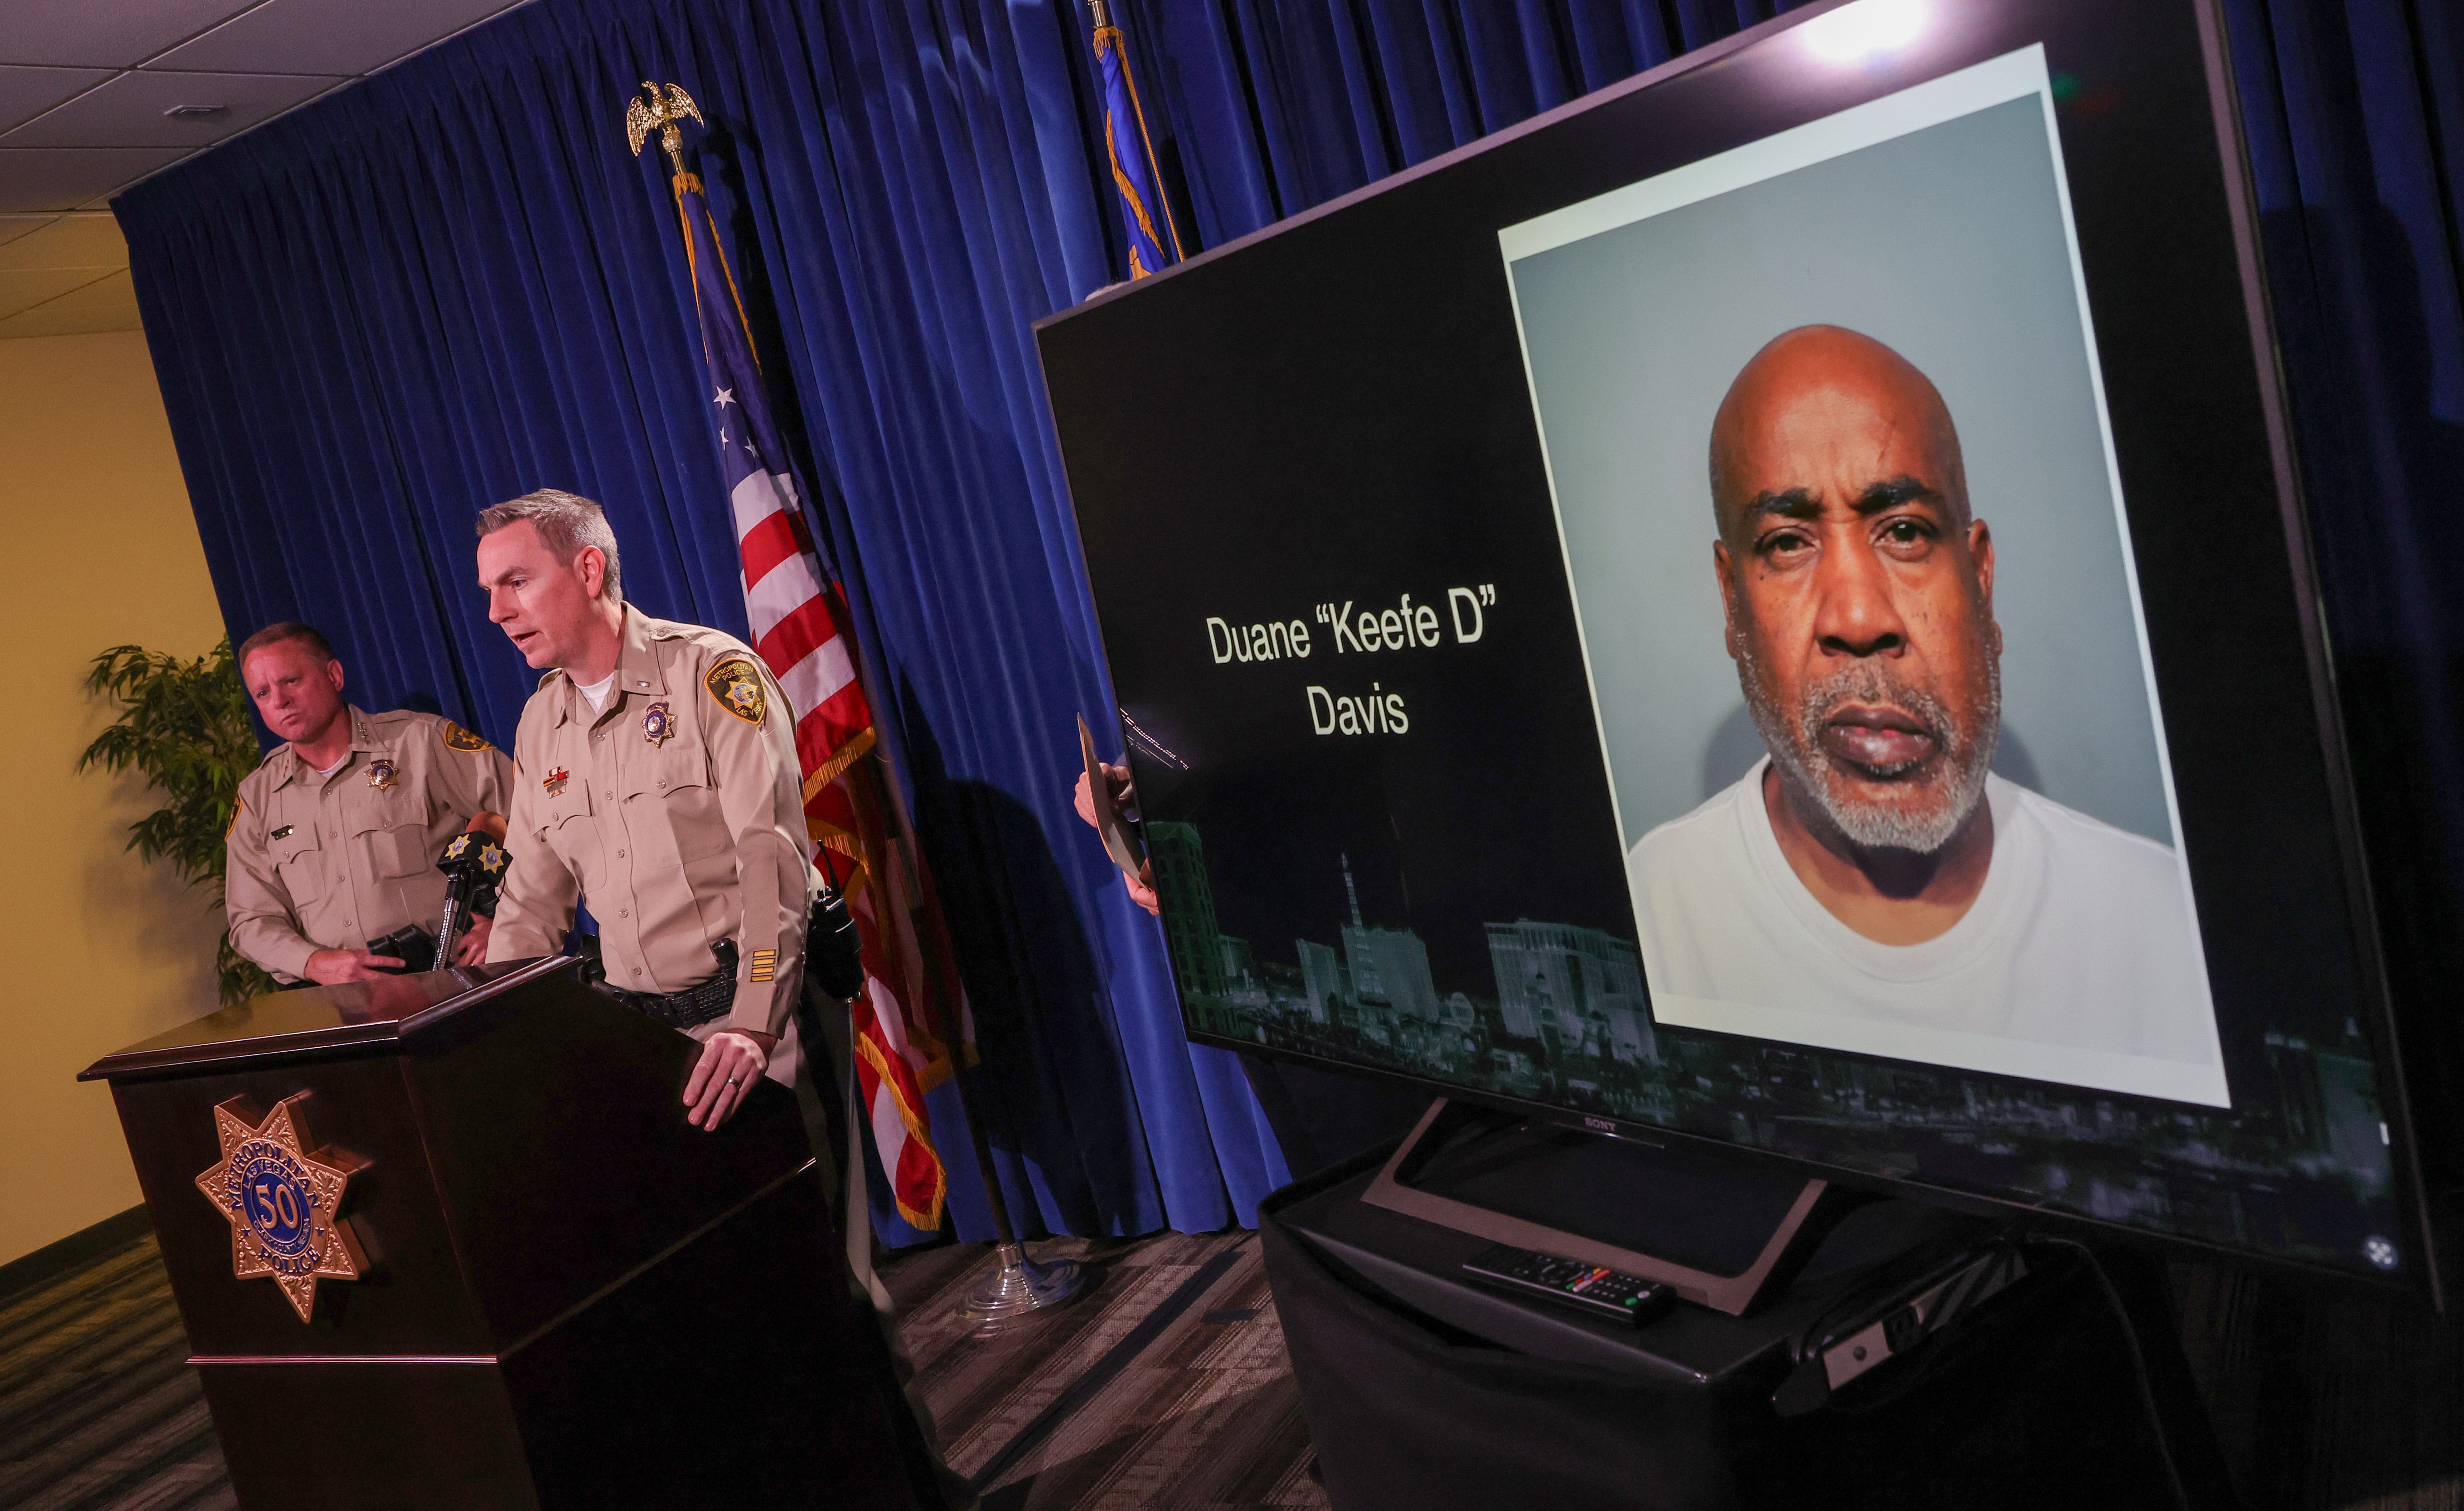 Eine Grand Jury in Nevada hat Davis in einem Fall wegen Mordes mit einer tödlichen Waffe bei der tödlichen Drive-by-Schießerei auf den Rapper Tupac Shakur am Freitag angeklagt.